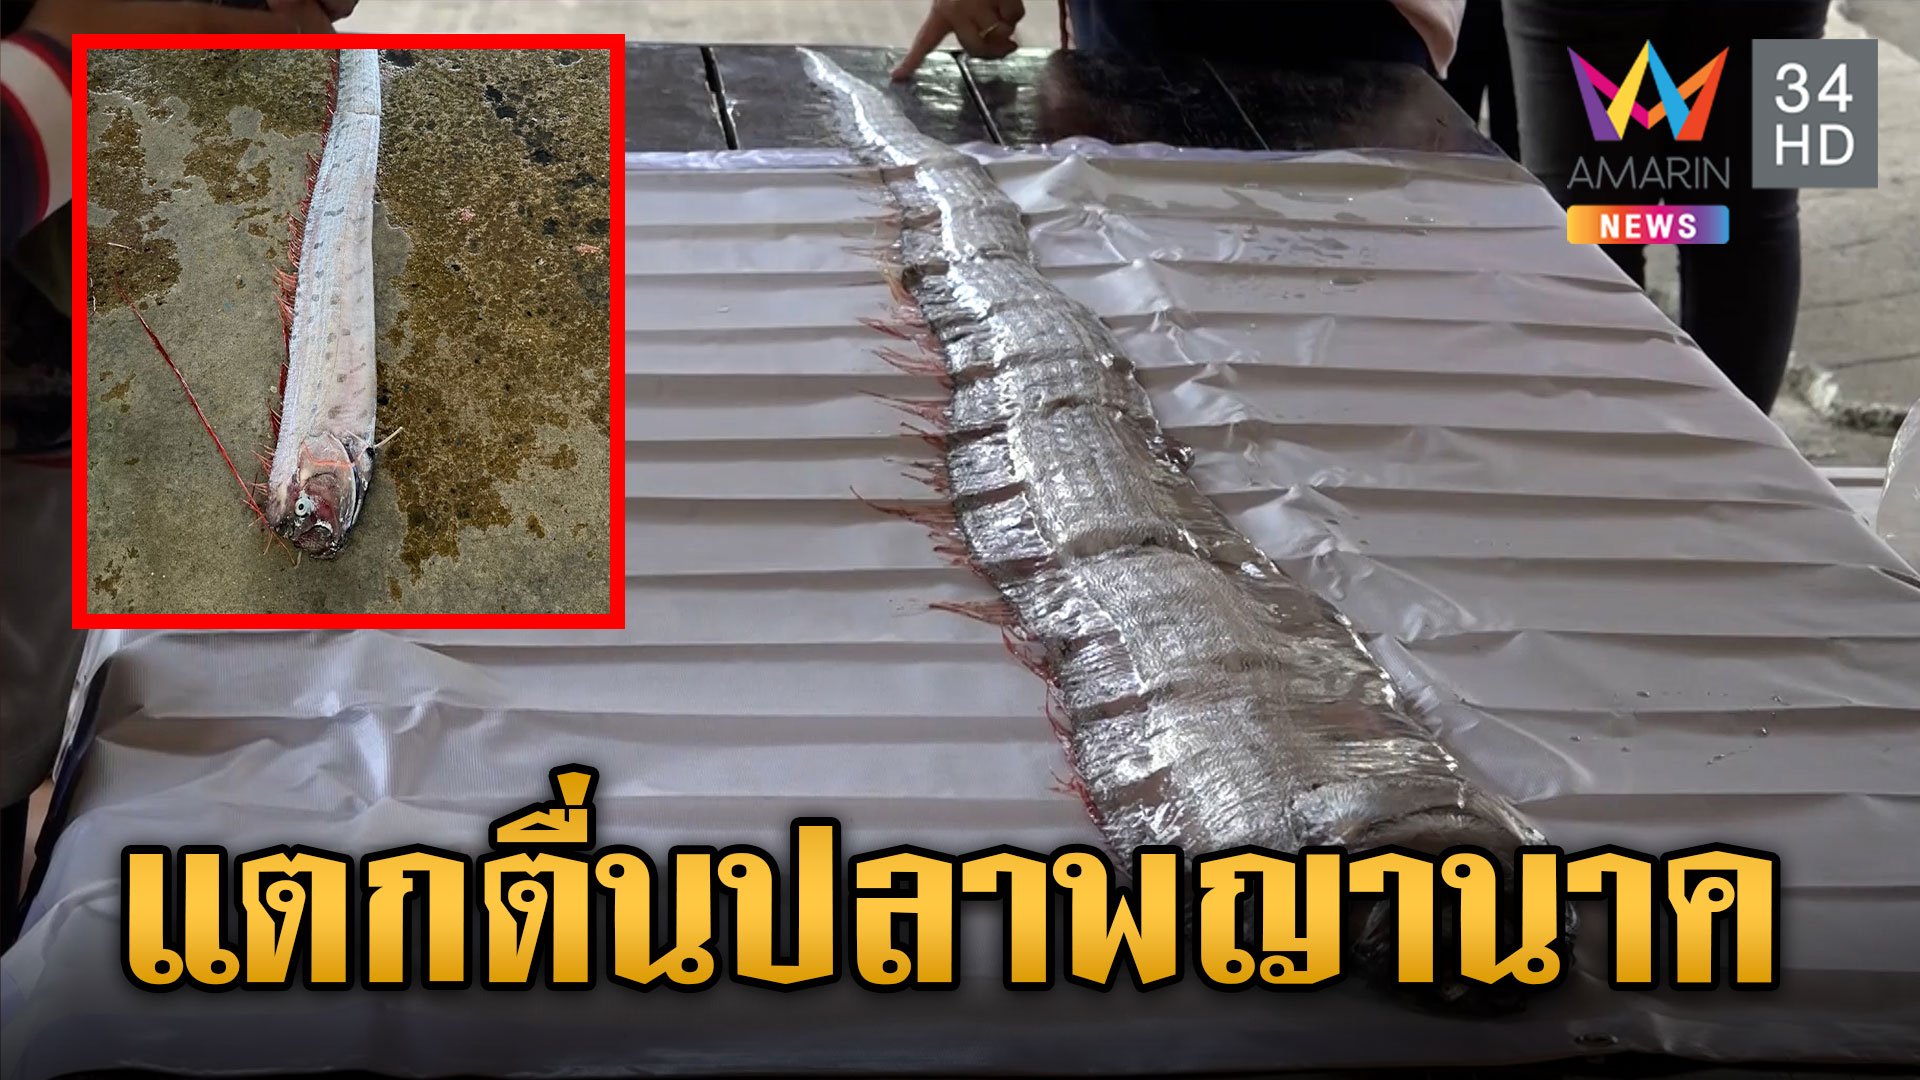 แตกตื่น! ปลาออร์ฟิช หรือปลาพญานาค โผล่ไทยหวั่นเกิดภัยพิบัติ | ข่าวเย็นอมรินทร์ | 5 ม.ค. 67 | AMARIN TVHD34